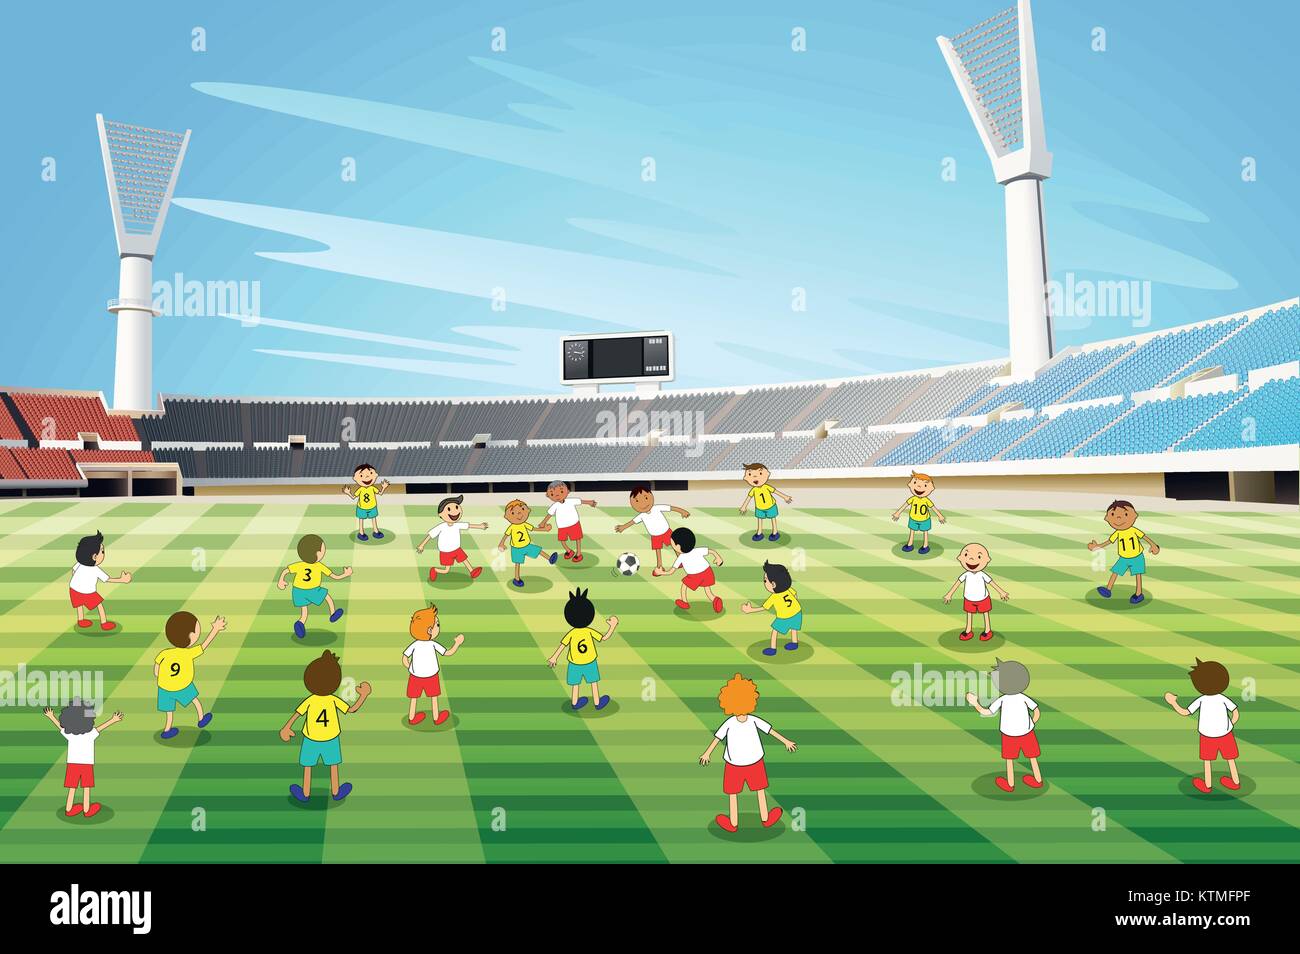 Abbildung: Jungs spielen Fußball in einem Stadion Stock Vektor